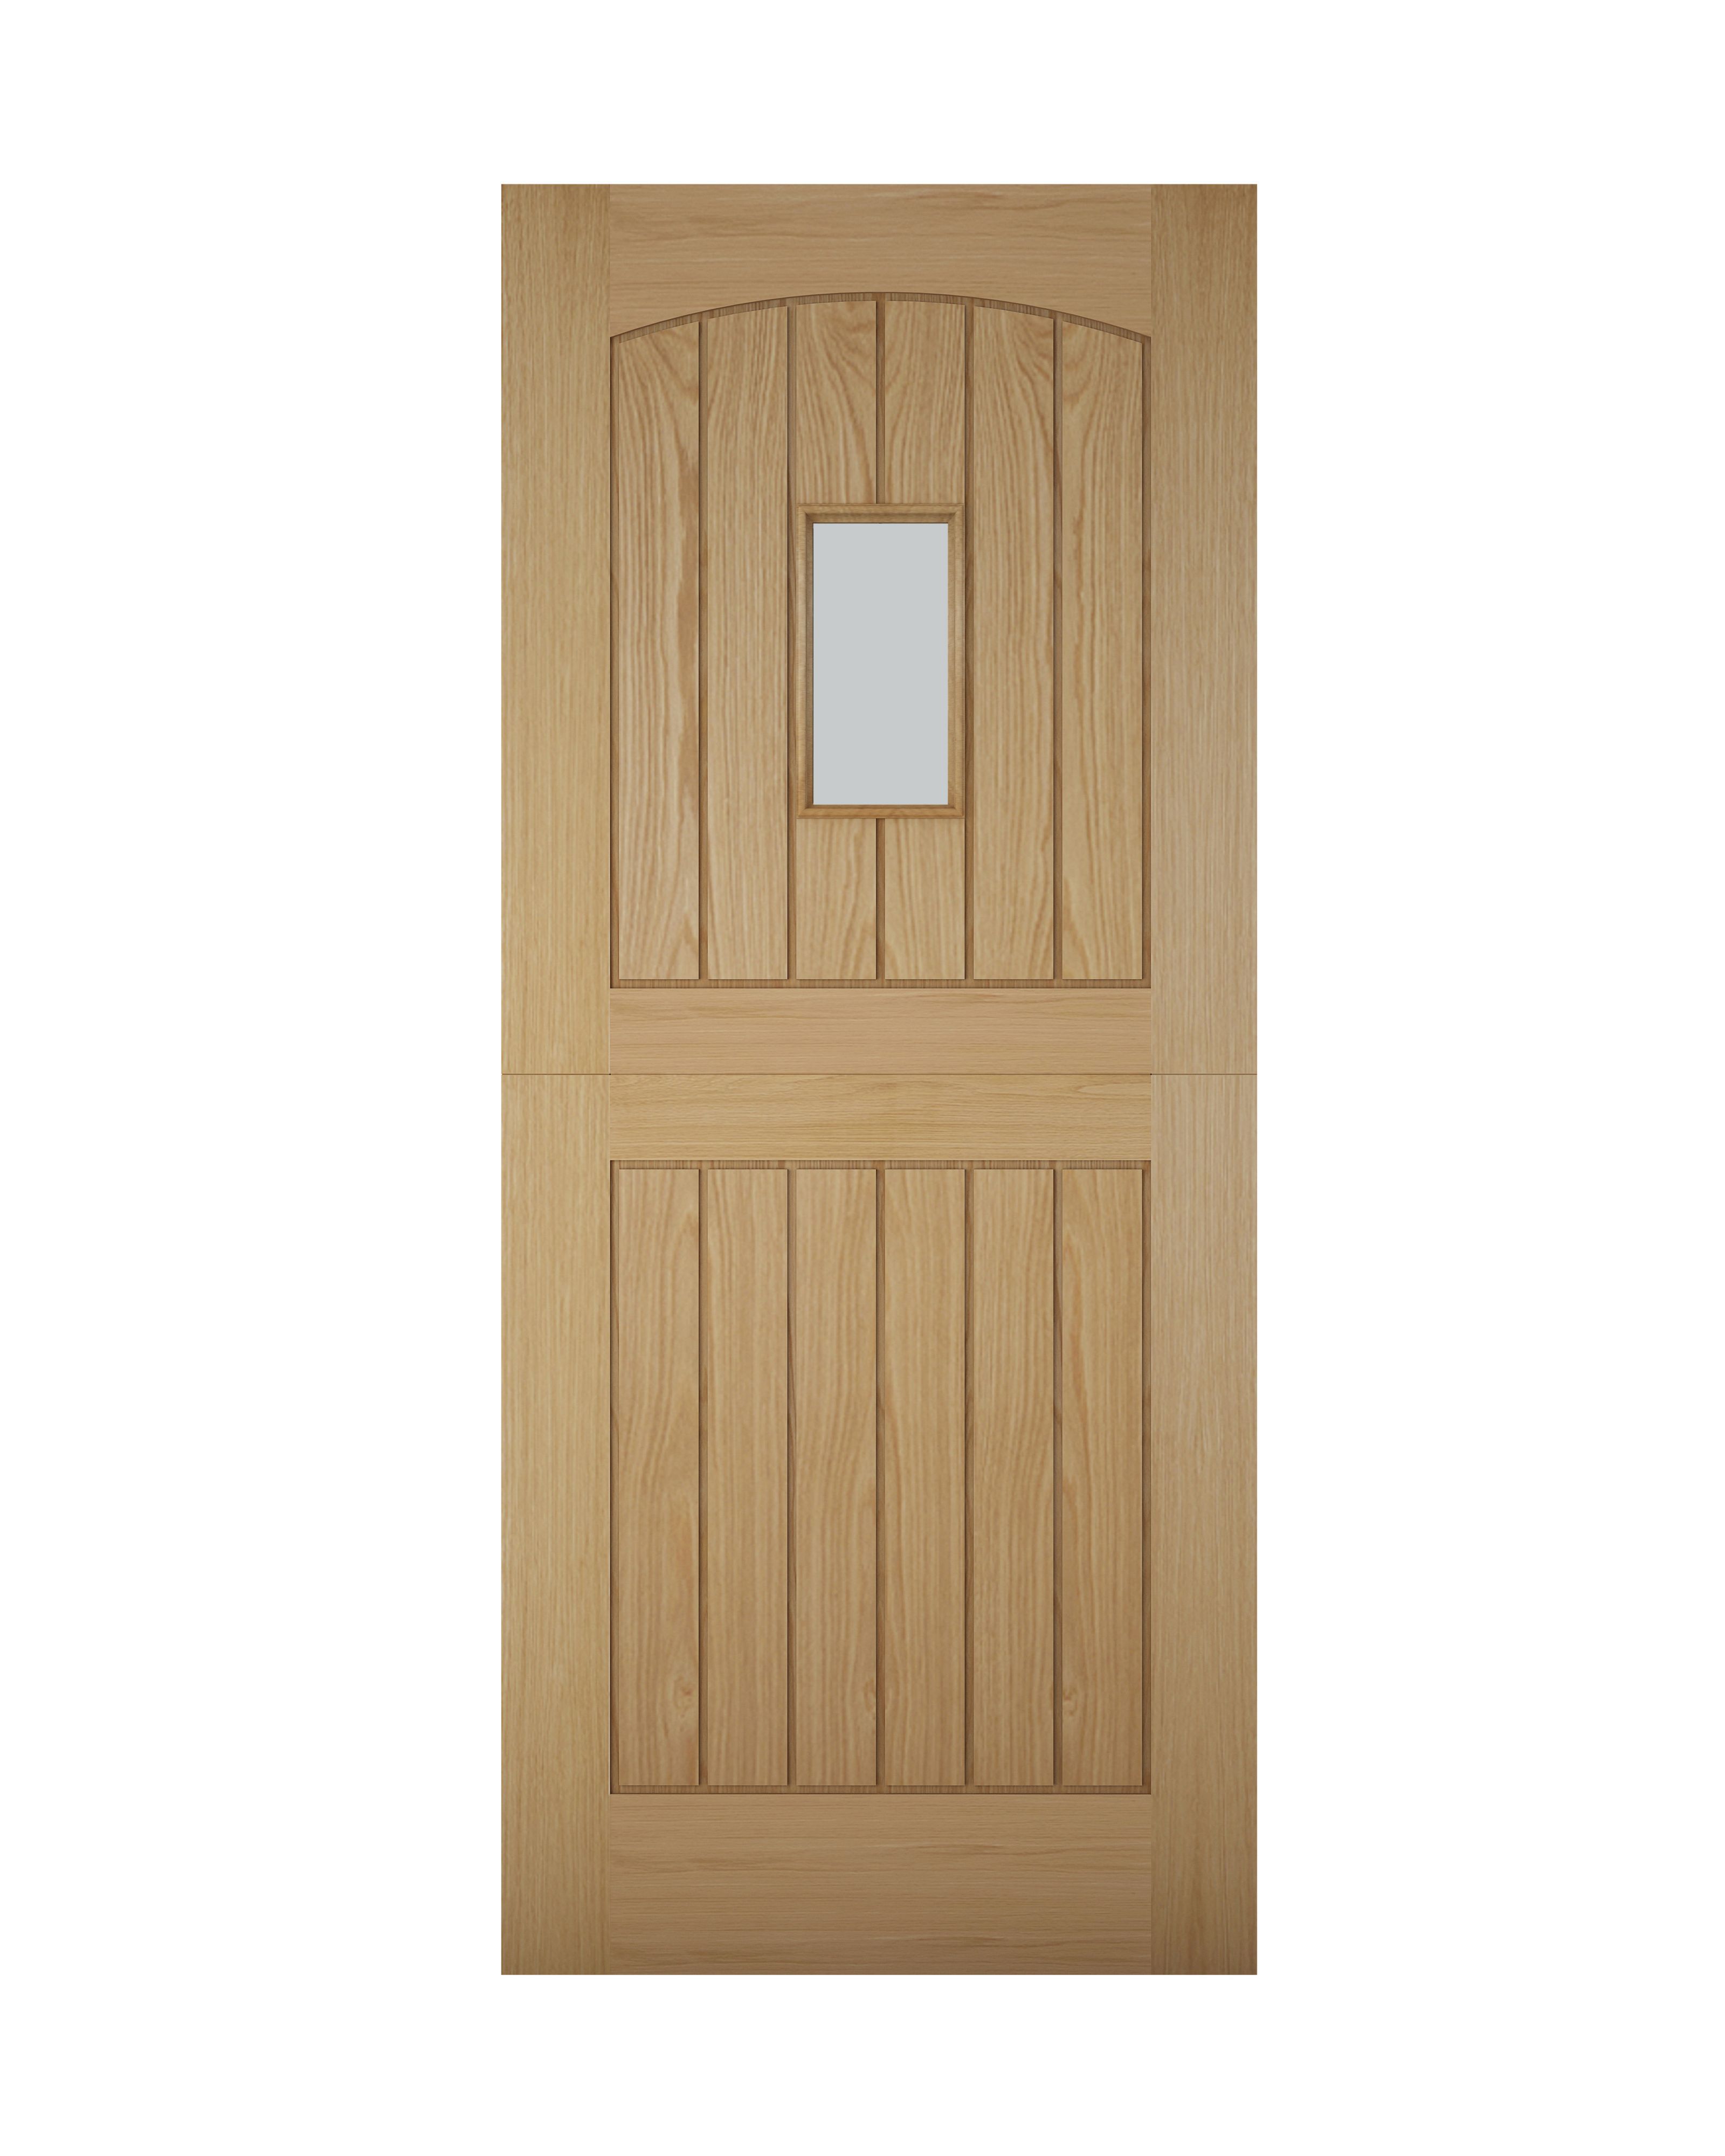 B&Q Stable Glazed Cottage White oak veneer Left & RHed Front door, (H)1981mm (W)838mm